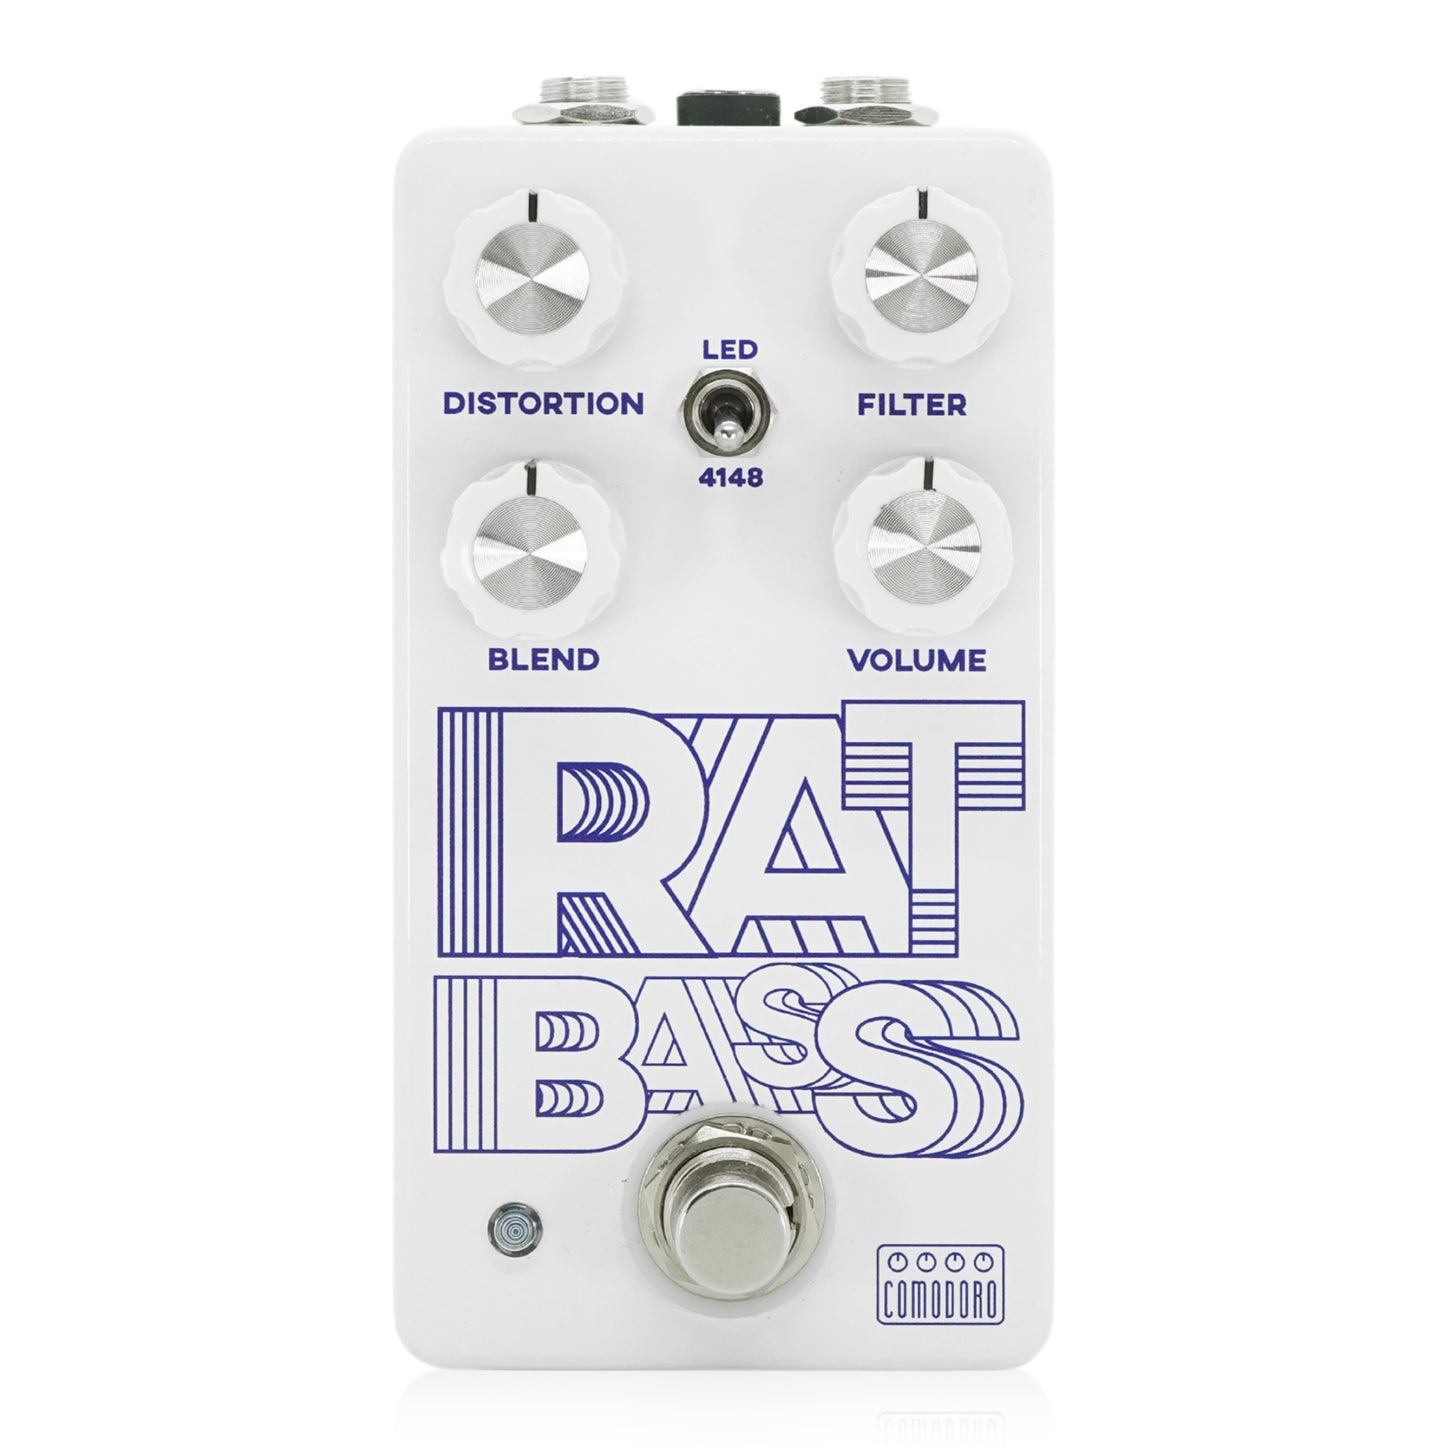 Comodoro　RAT BASS  / ディストーション ベース用 エフェクター